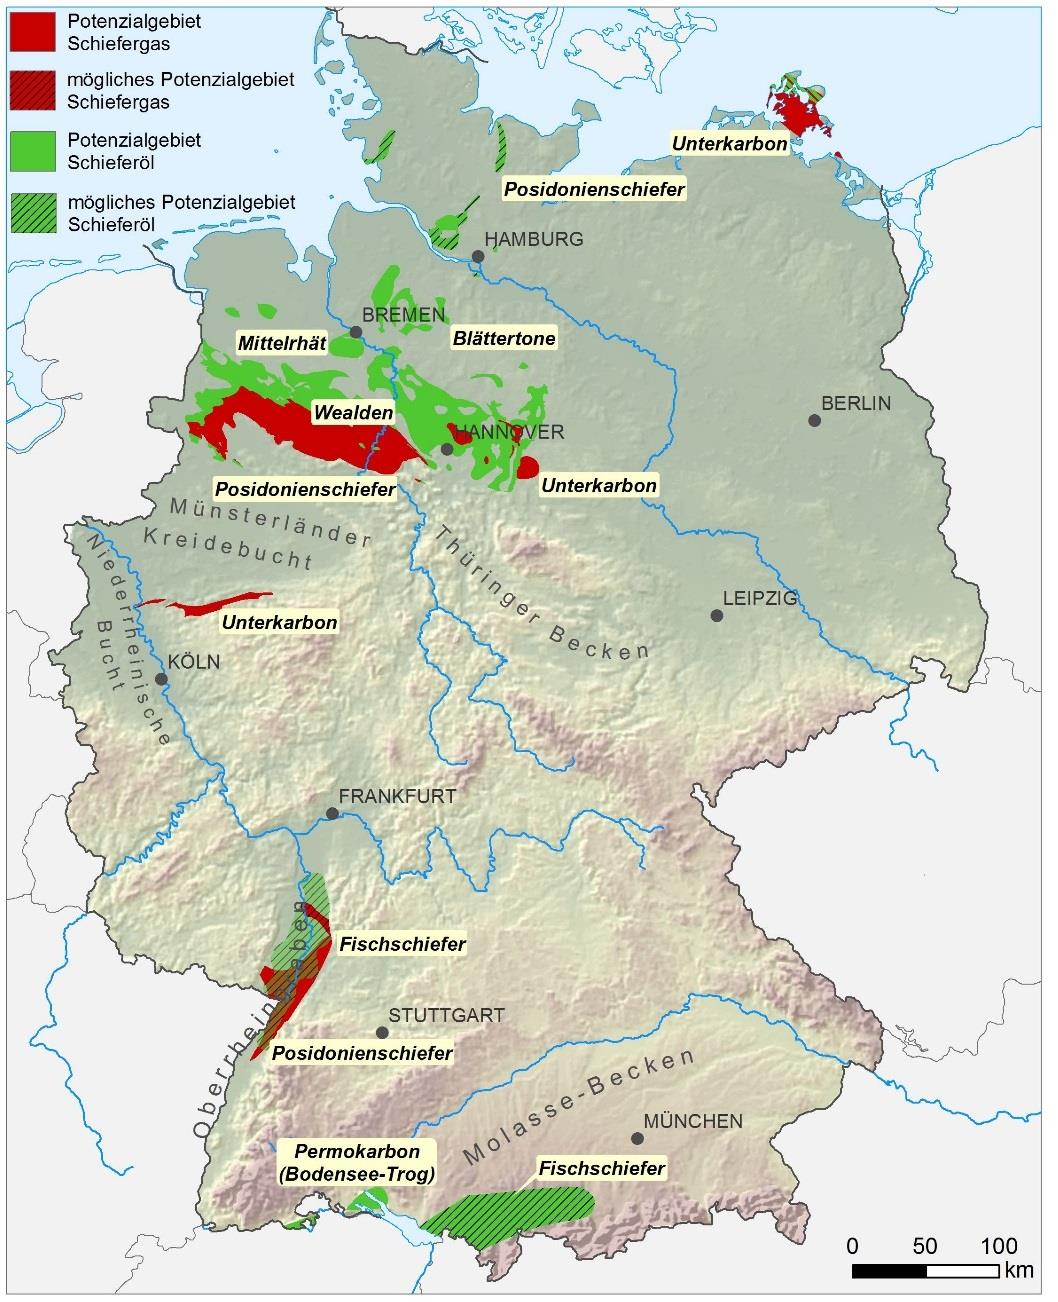 Schiefergas/öl in Deutschland BGR Studie 2016 Erdgas [Milliarden m³] 0 500 1000 1500 2000 2500 (min.